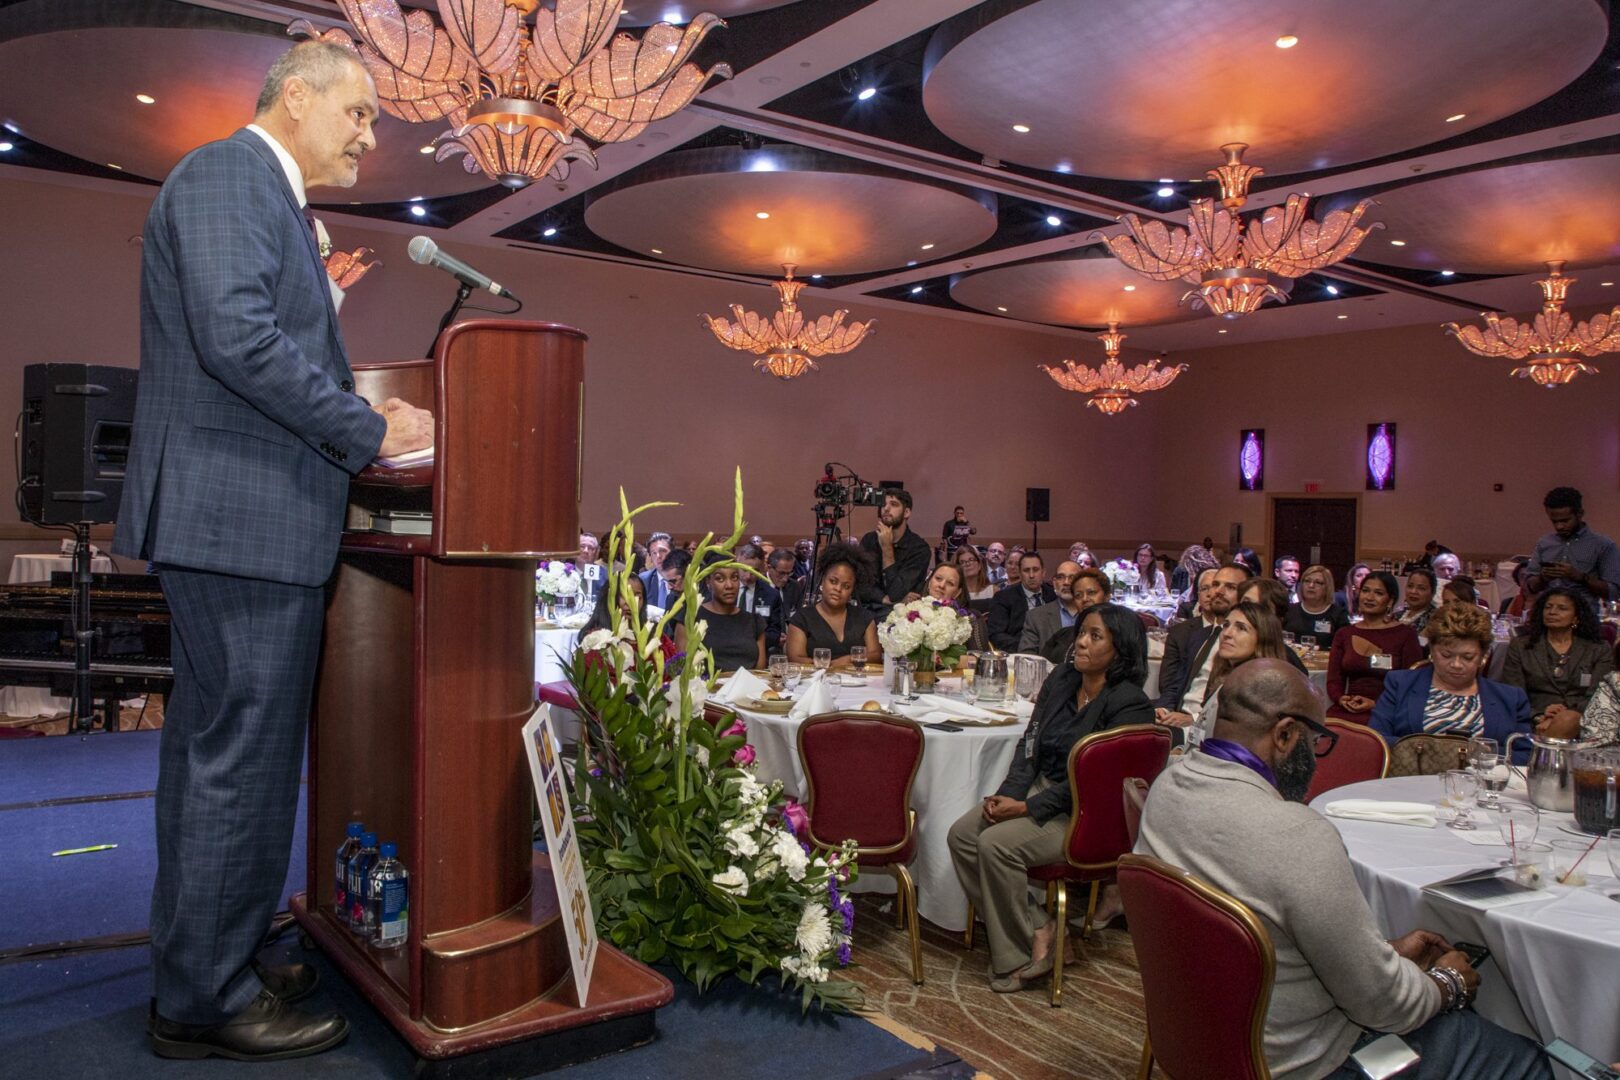 A man giving a speech at a banquet.